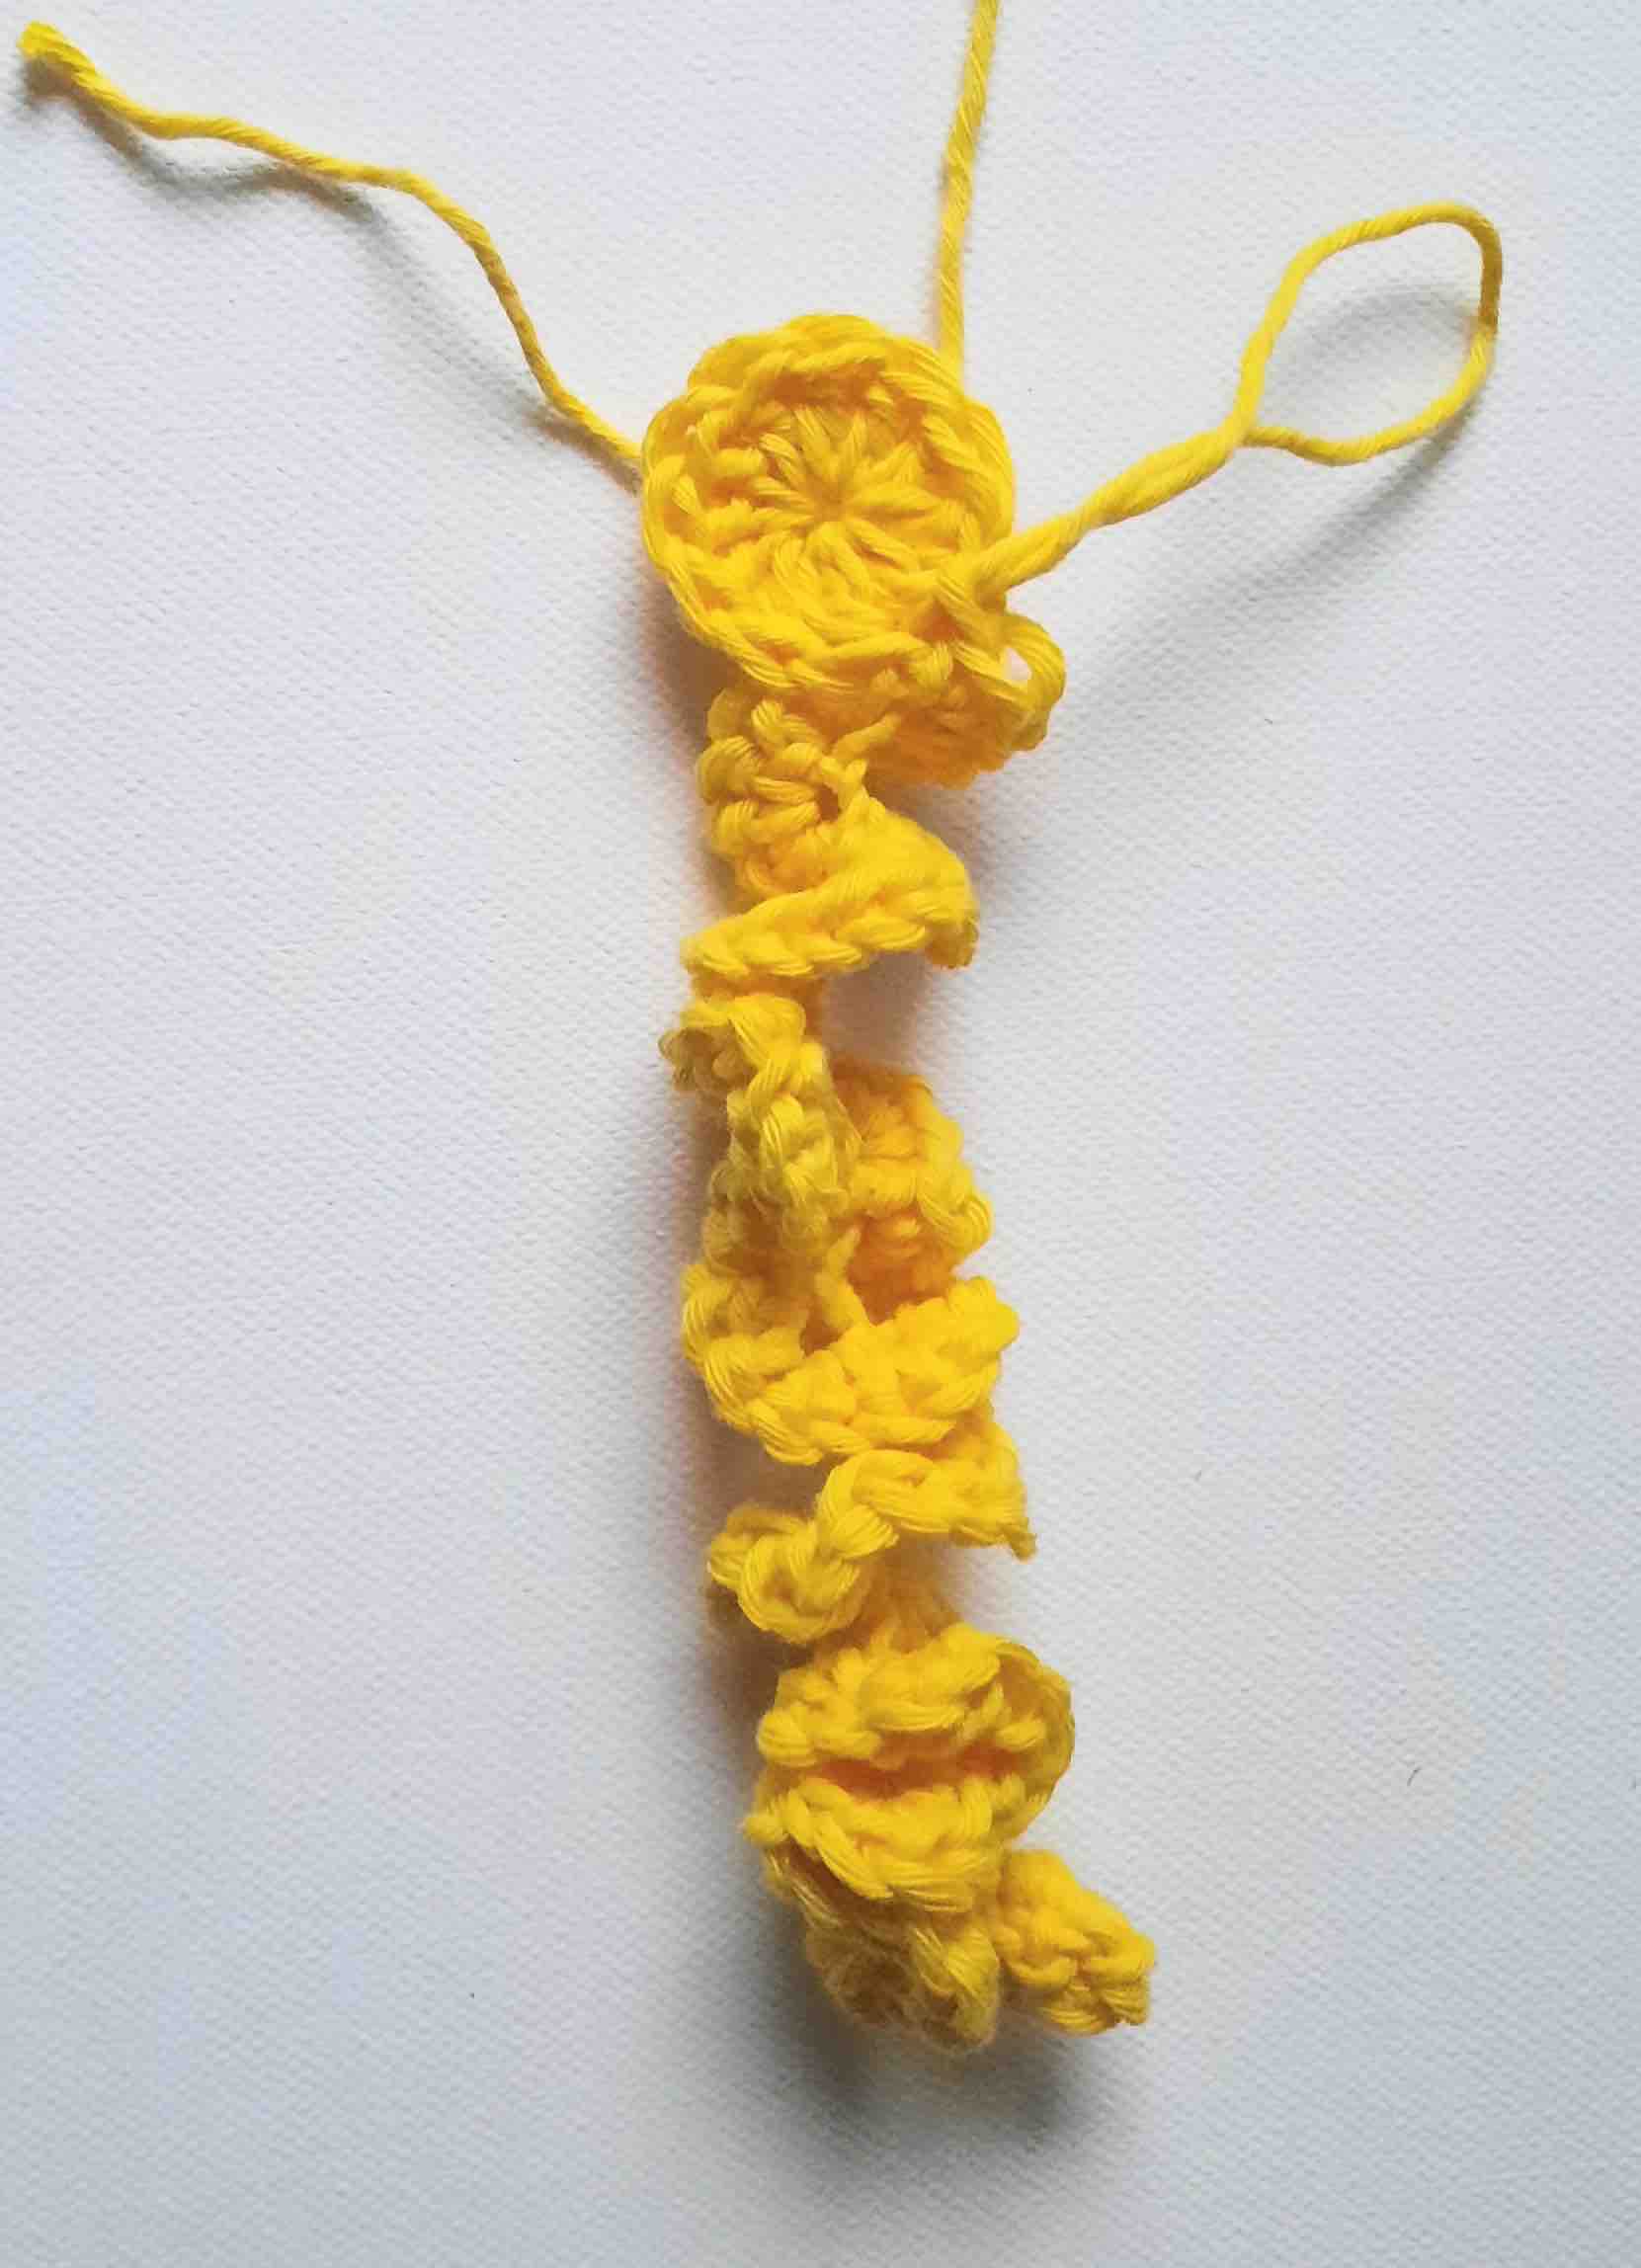 Bee worry worm crochet pattern written